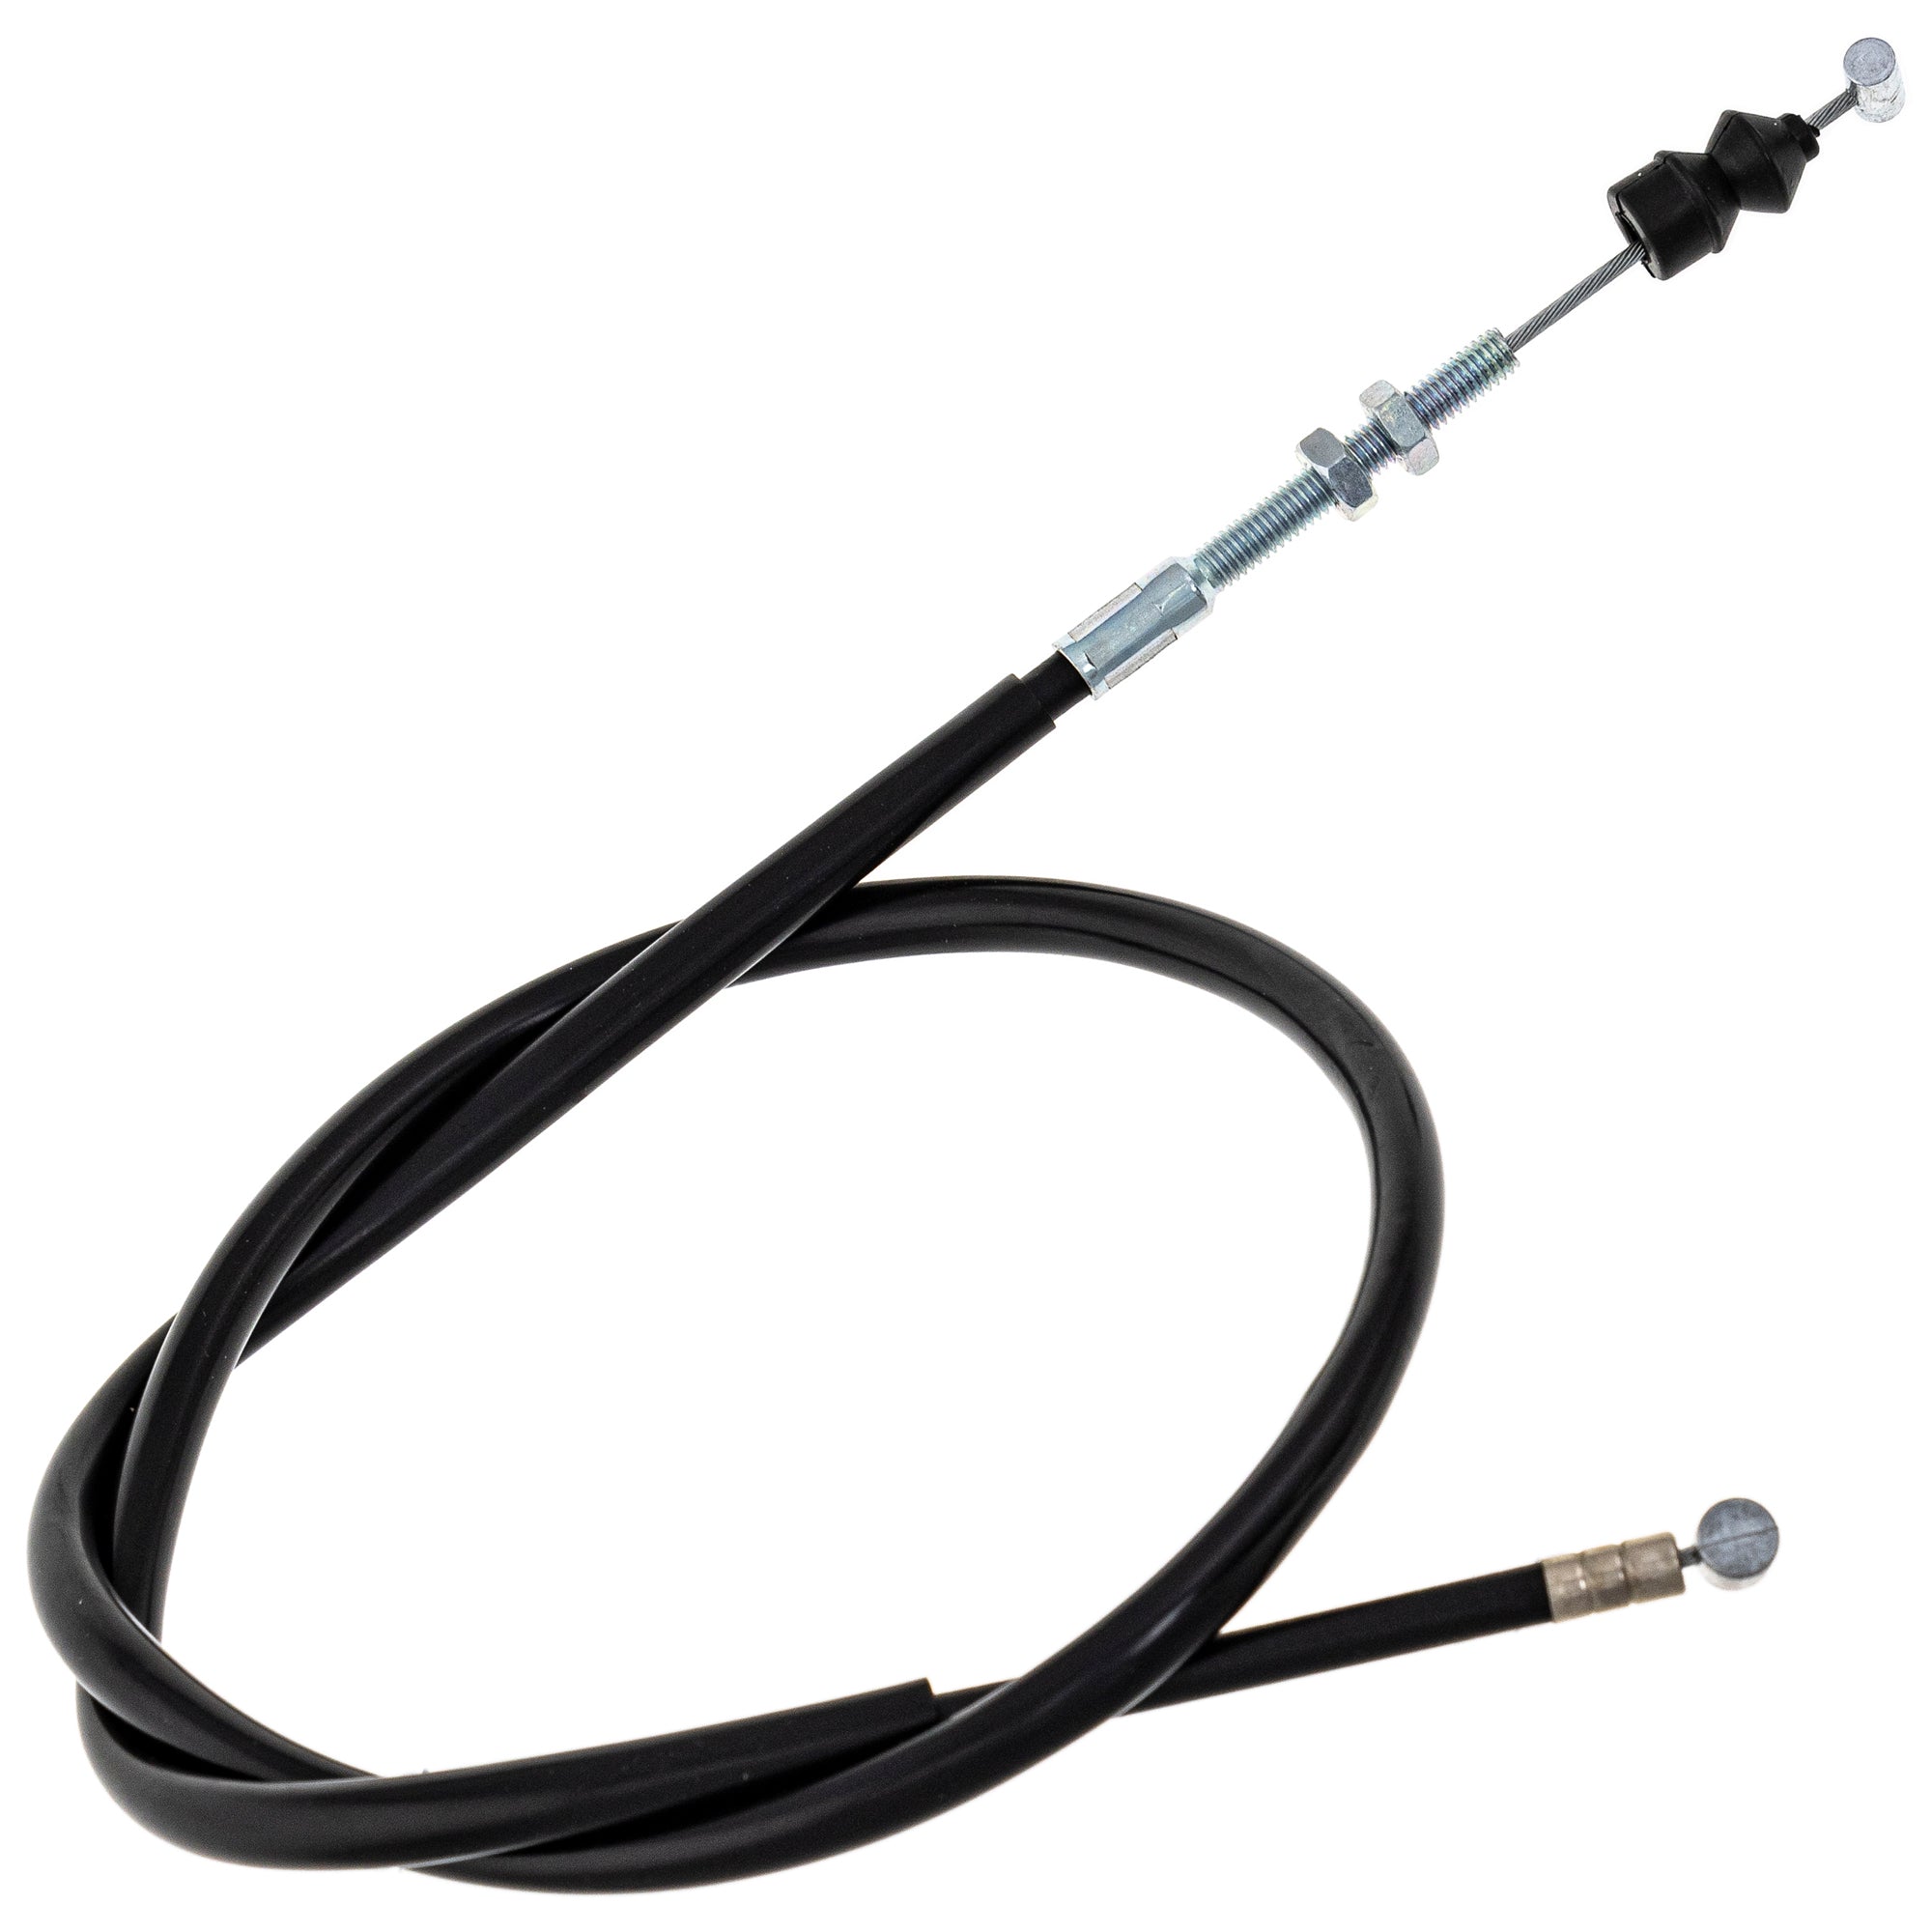 Clutch Cable for Kawasaki Suzuki KX65 RM65 54011-1415 K5401-11415